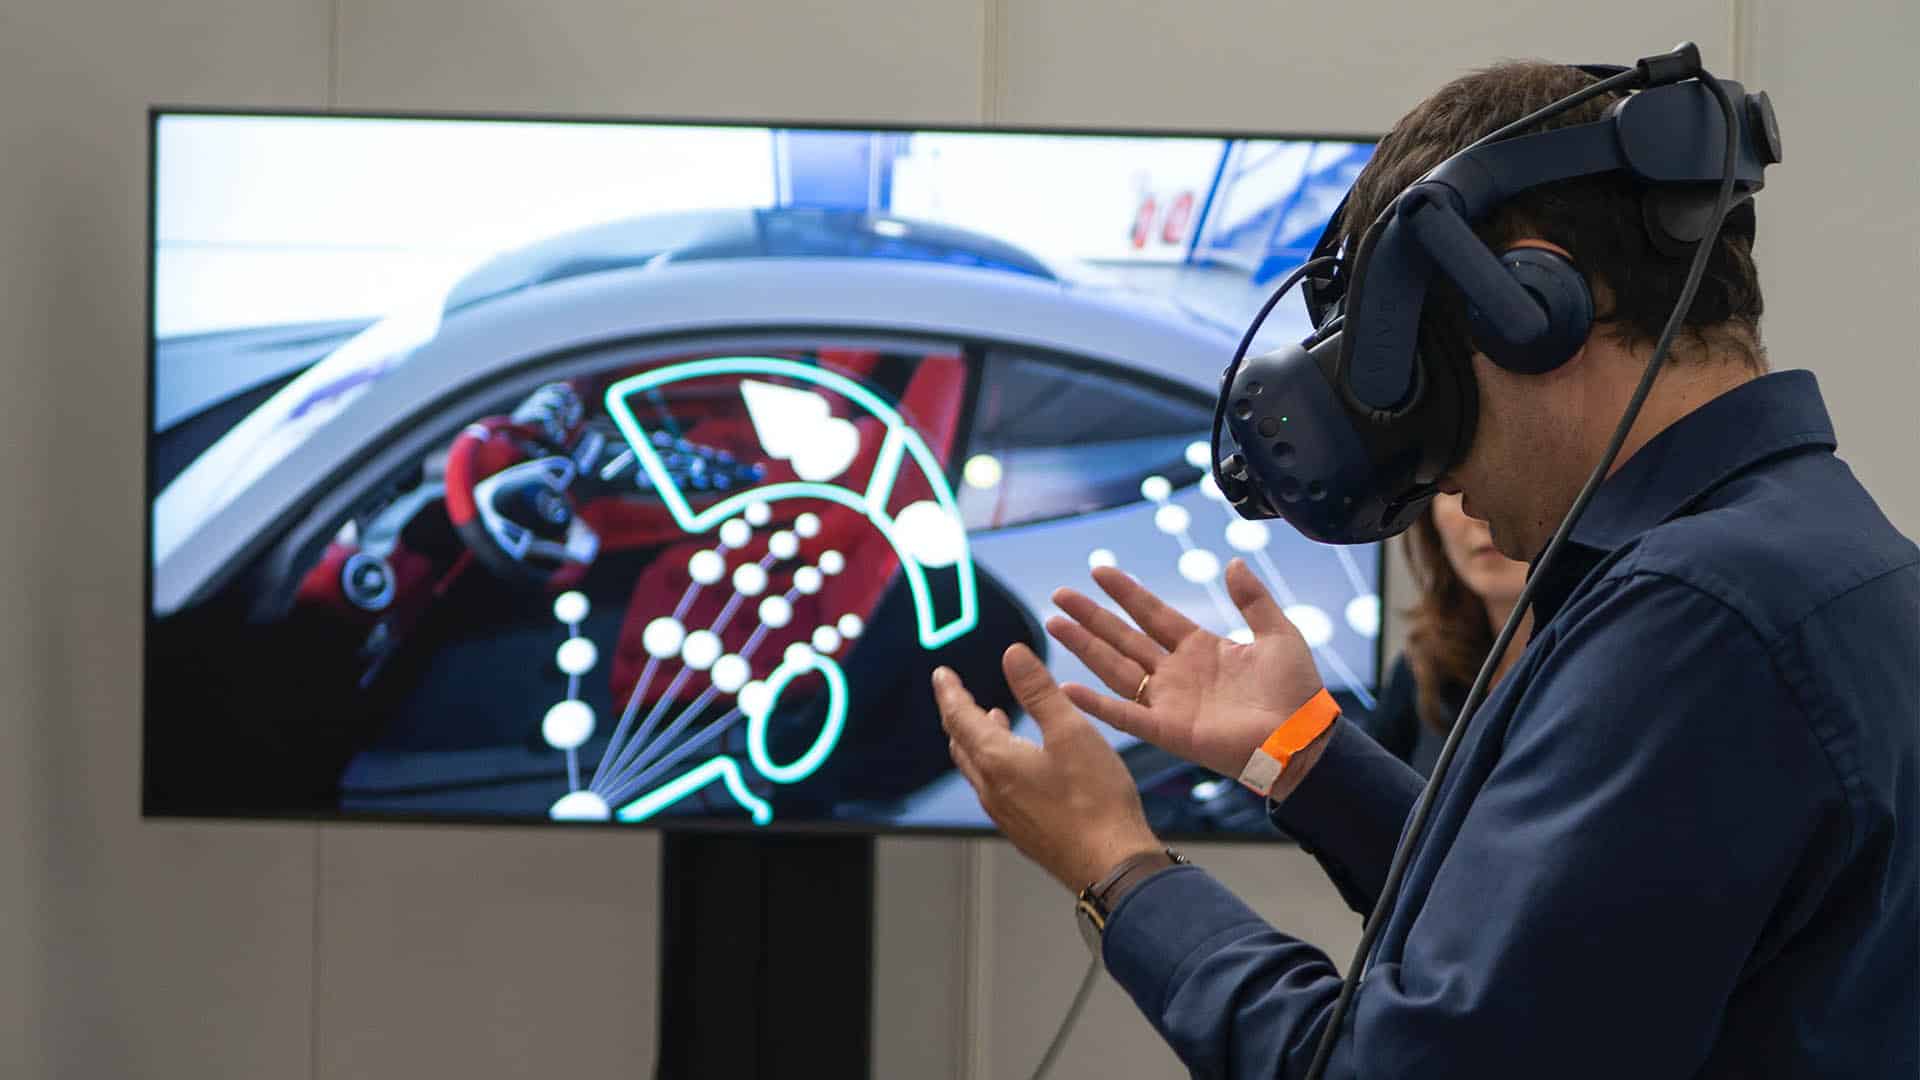 (Brýle VR poskytují nové a zajímavé pohledy. ( Zdroj obrázku: XR Expo)